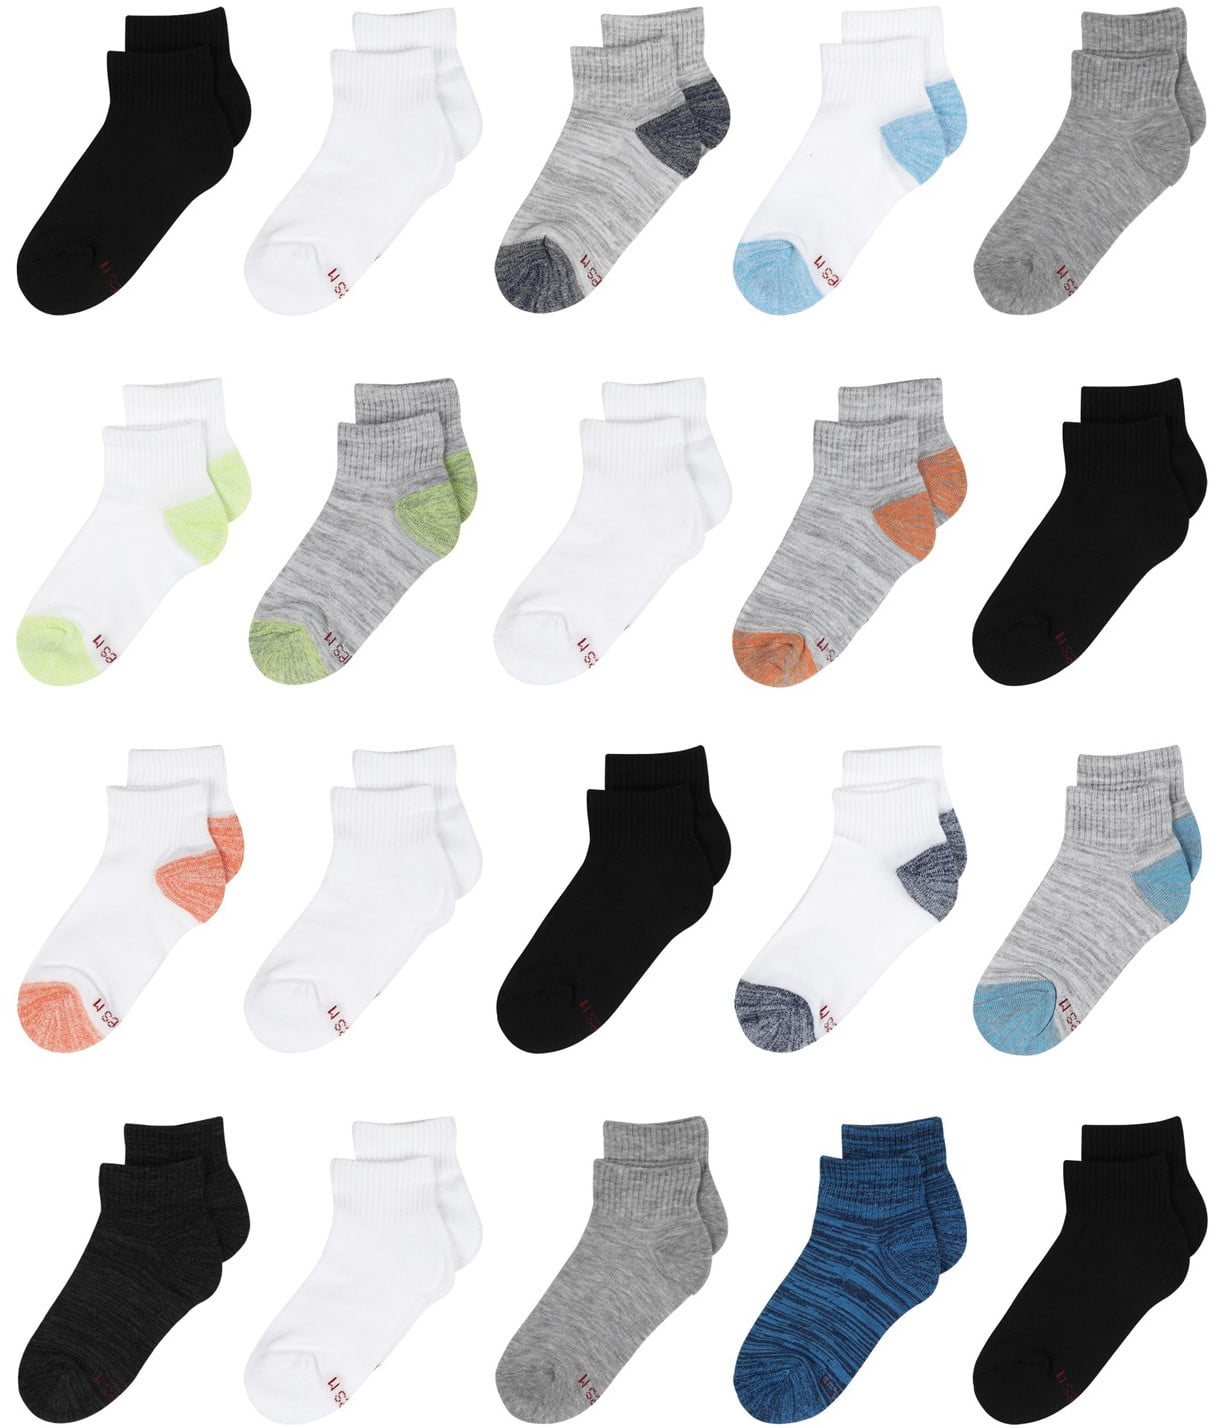 Hanes Boys Socks, 20 Pack Ankle Super Value Socks, Sizes S (4.5-8.5 ...